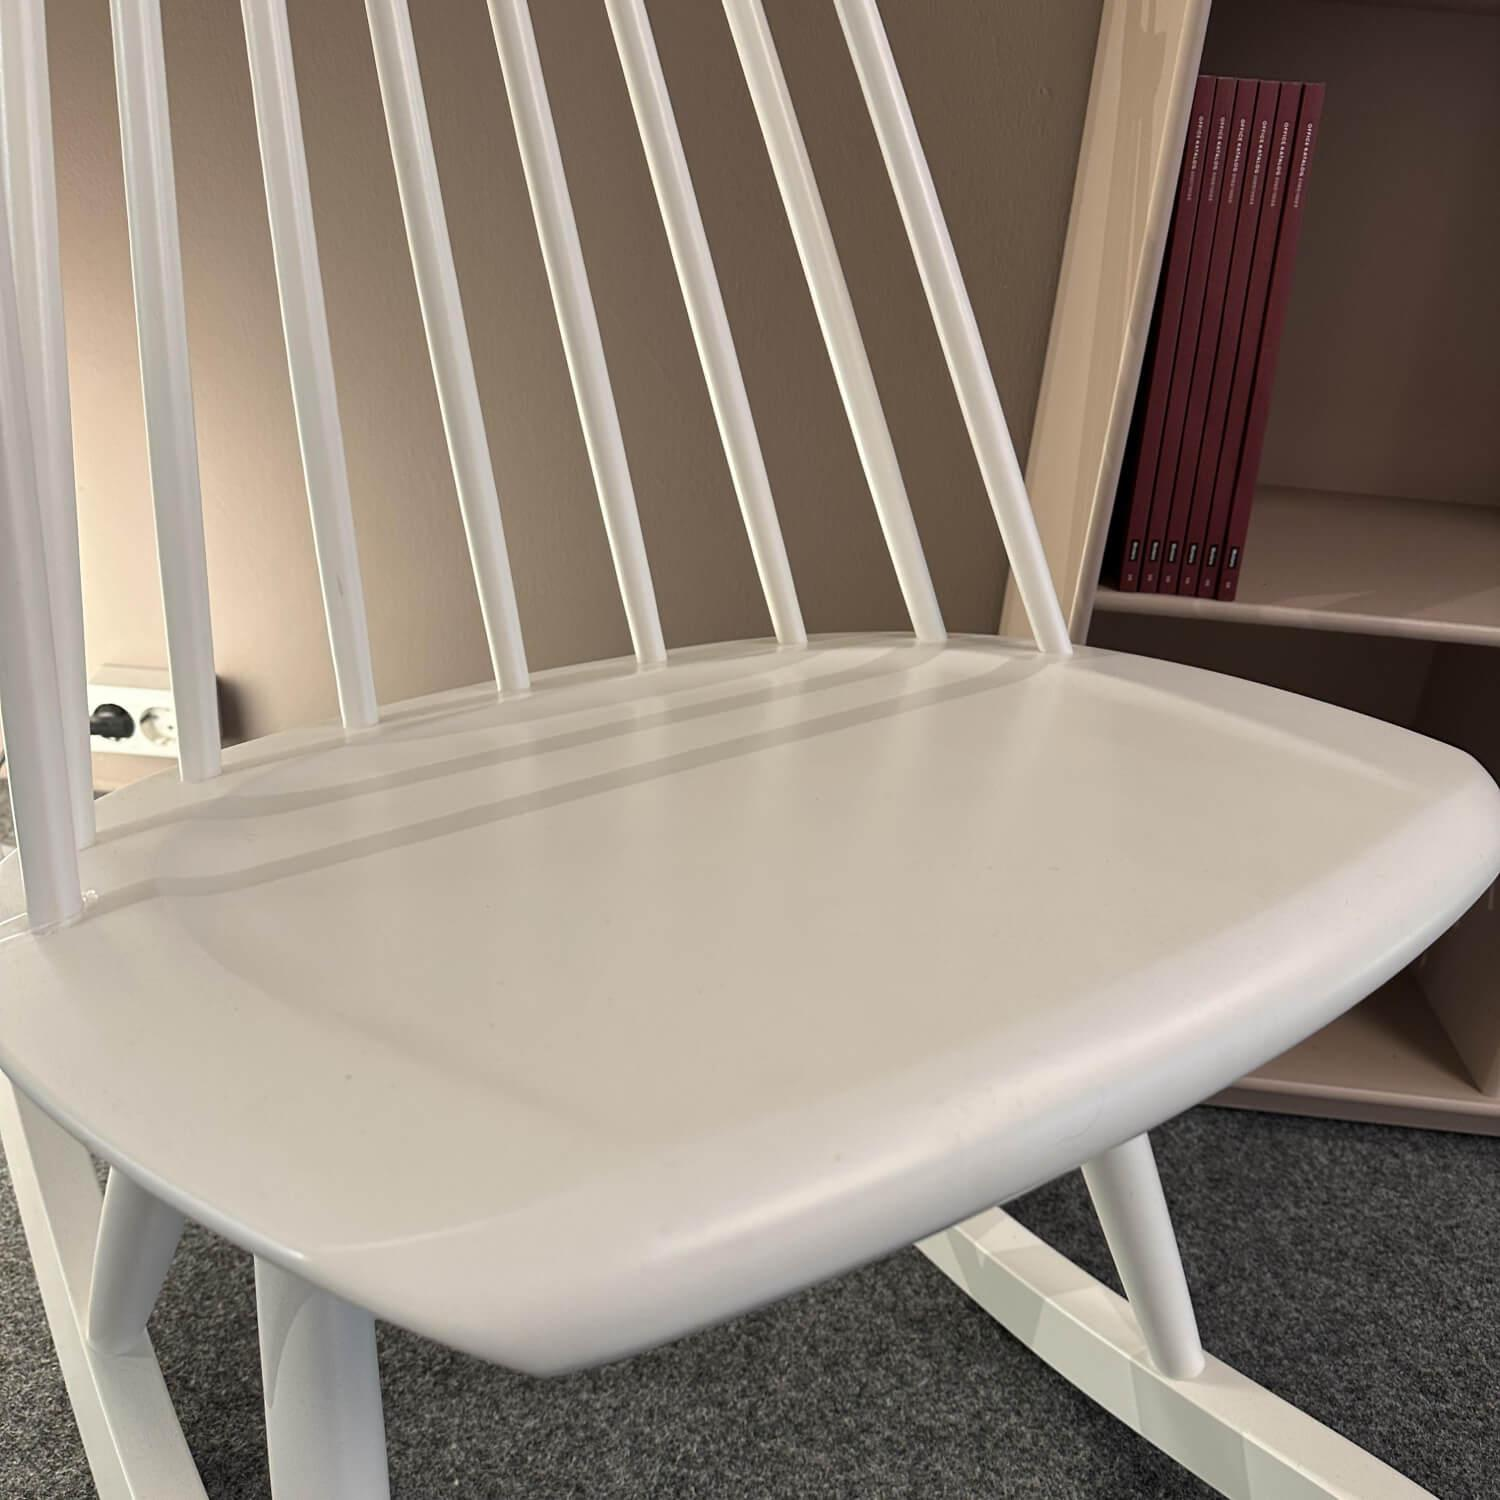 Schaukelstuhl Mademoiselle Rocking Chair Birke Massiv Lack Weiß